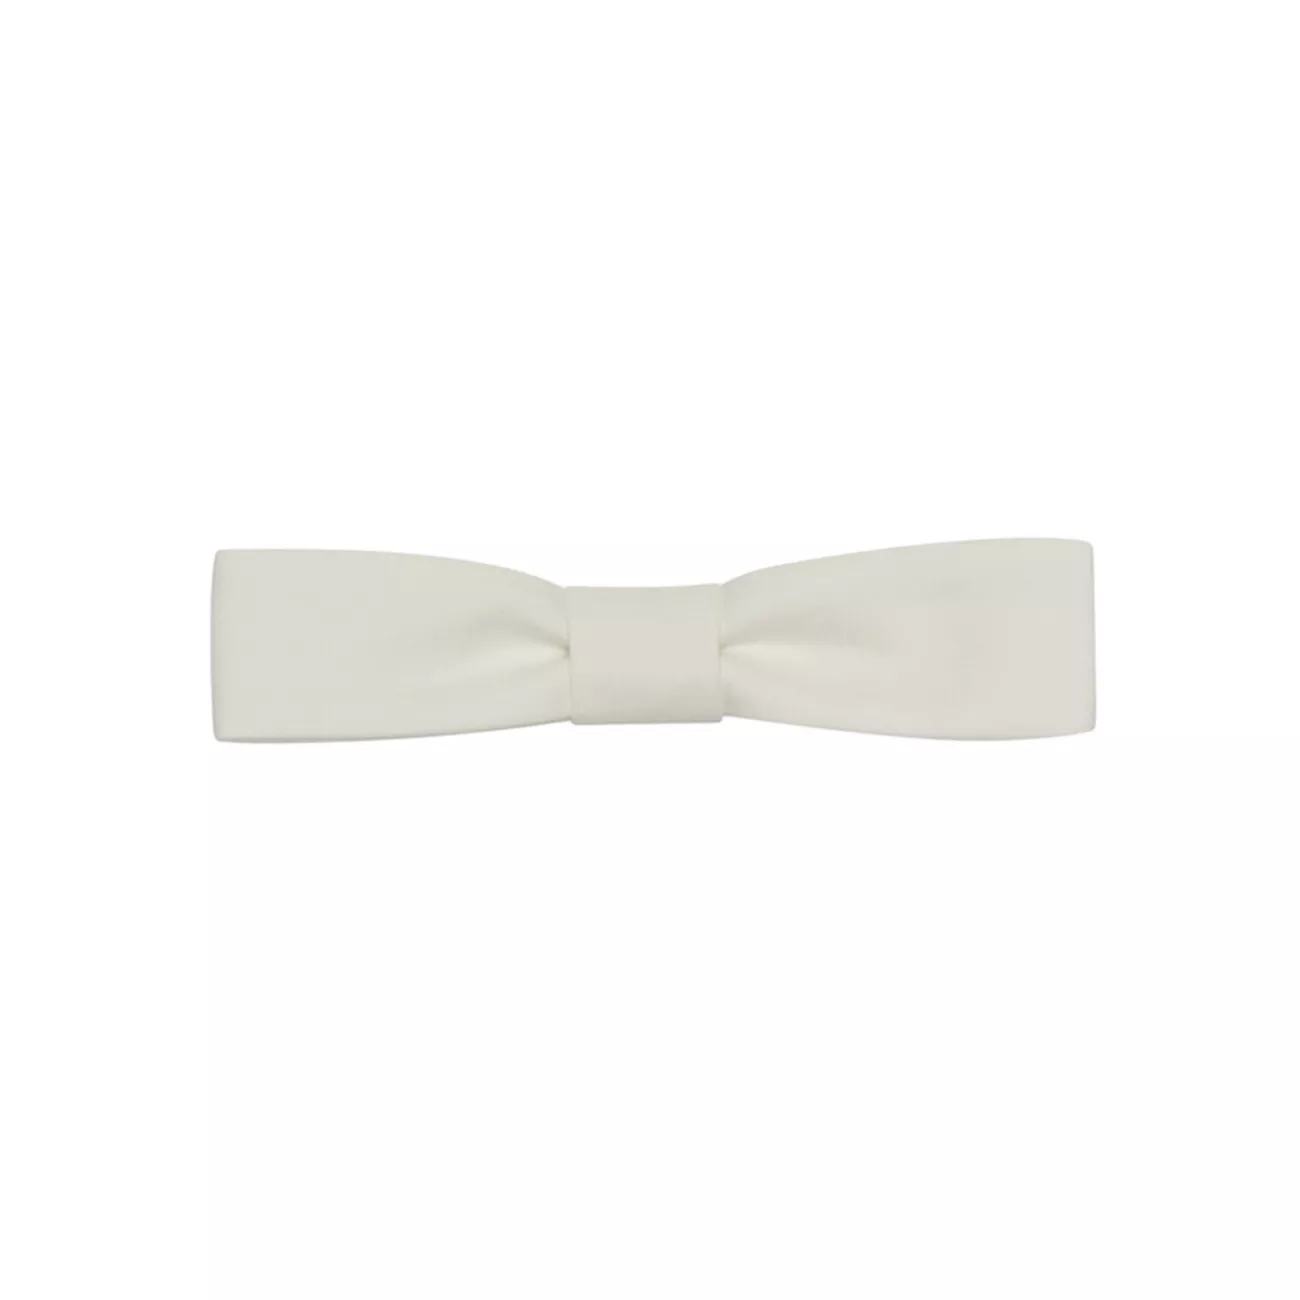 Rectangular Bow Tie in Cotton Poplin Saint Laurent